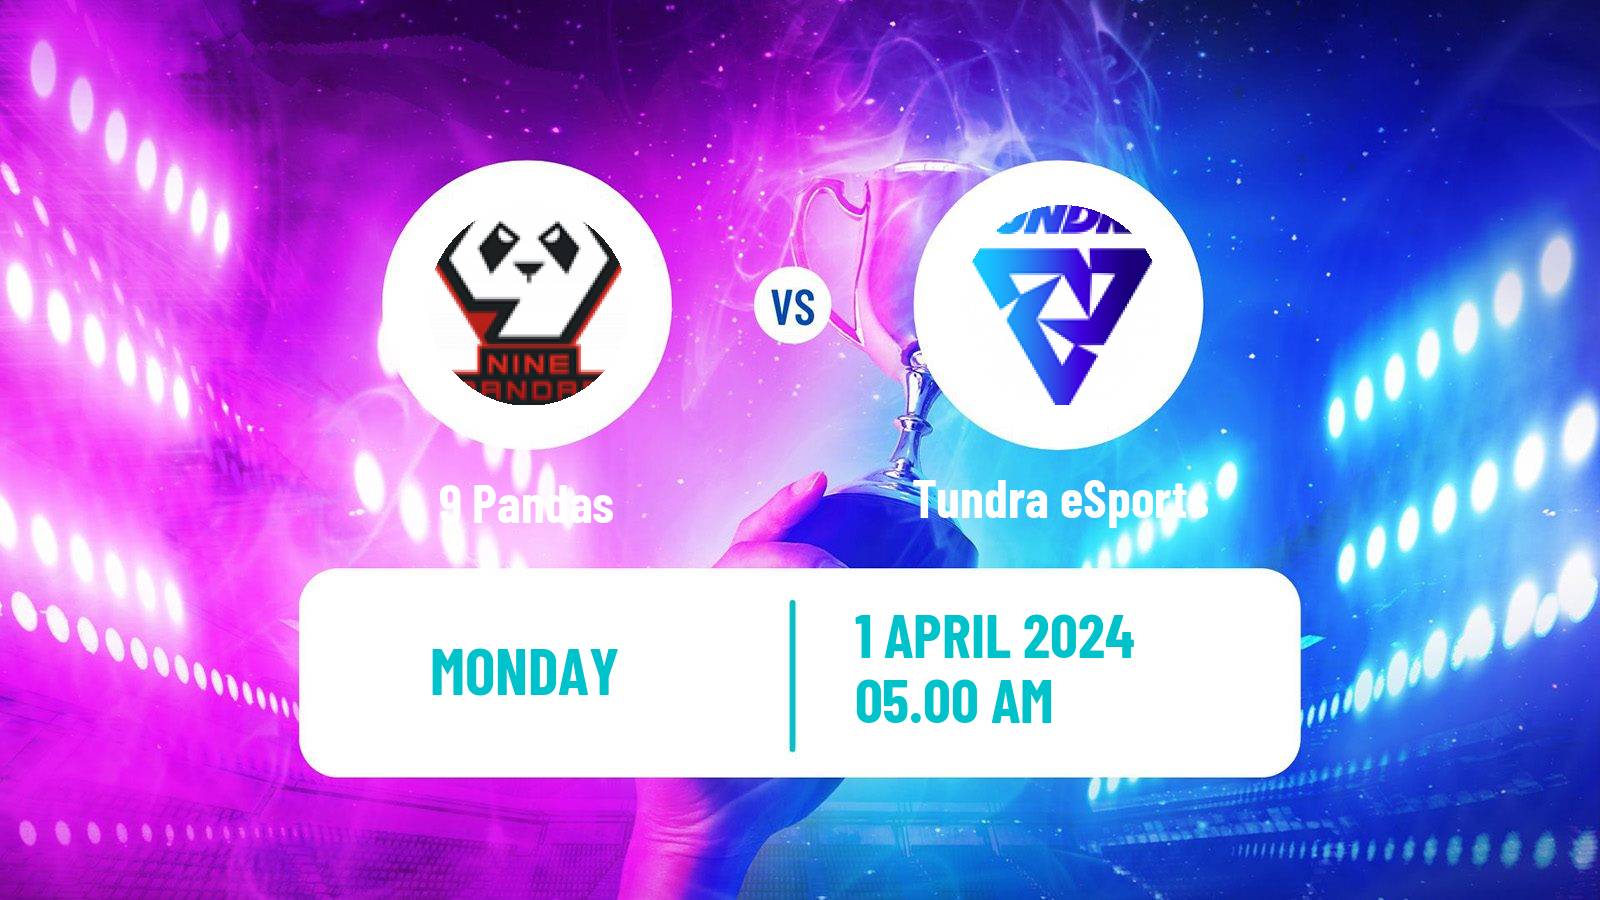 Esports Dota 2 Elite League 9 Pandas - Tundra eSports